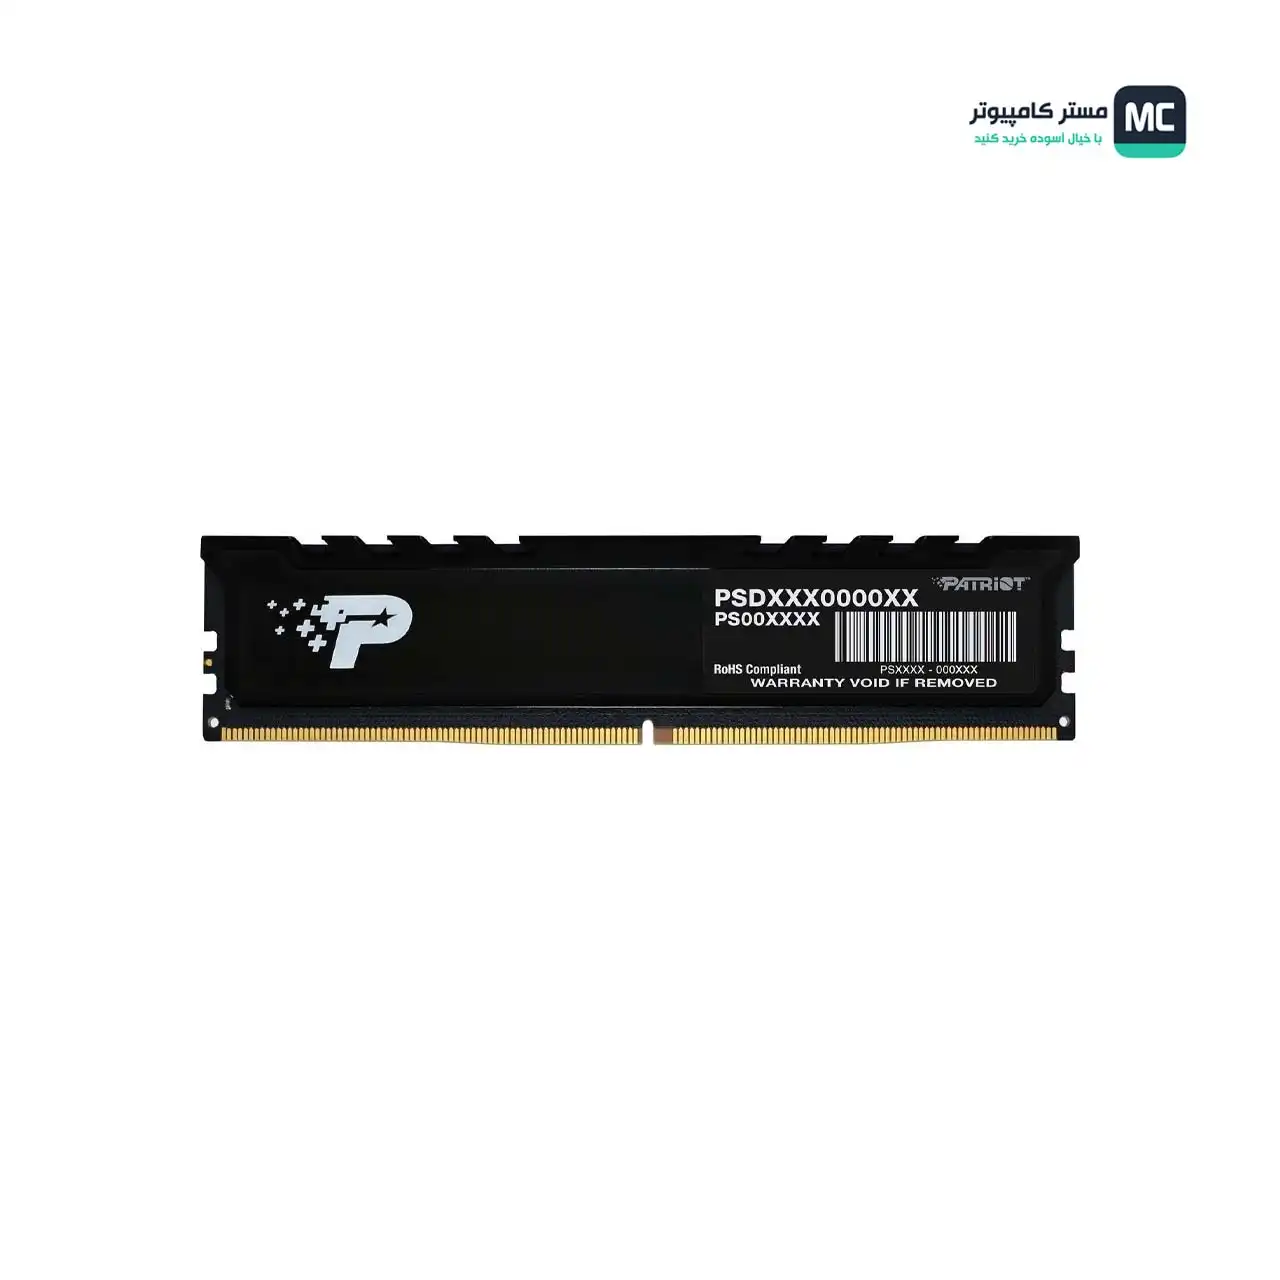 تصویر اصلی رم پاتریوت Signature Premium DDR5 8GB 4800MHz CL40